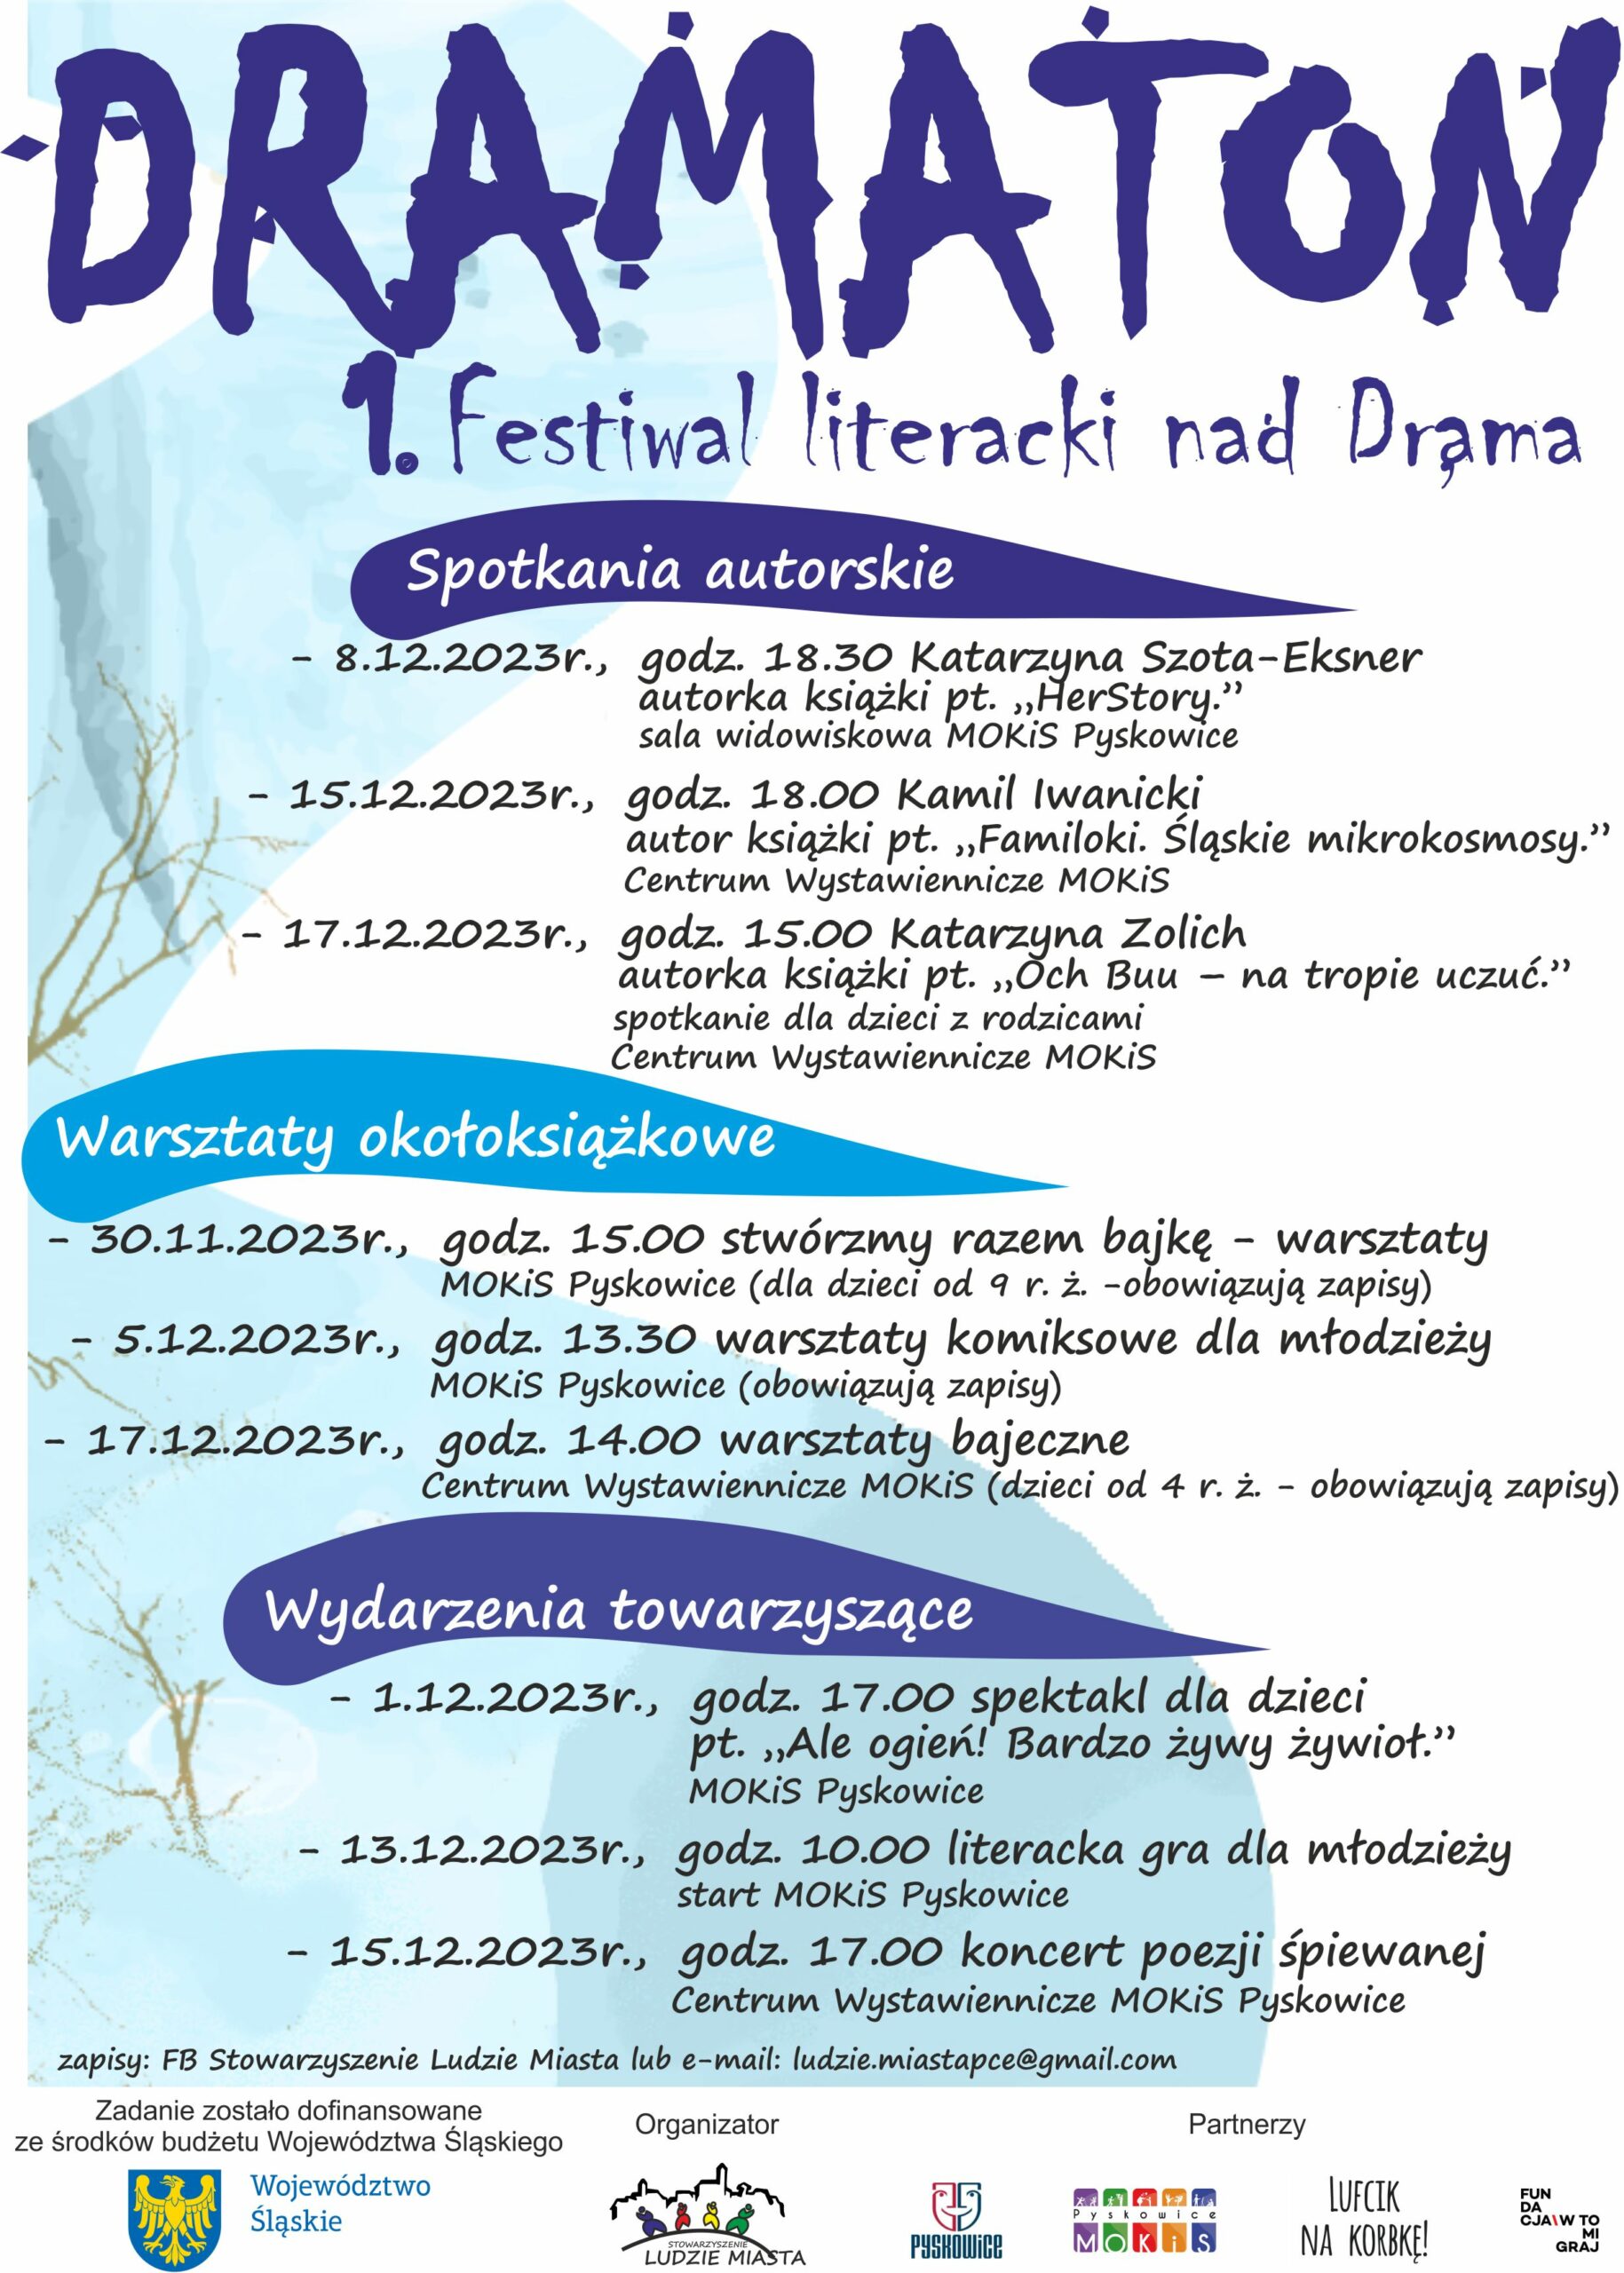 Plakat promujący DRAMATON czyli 1 Festiwal literacki nad Dramą